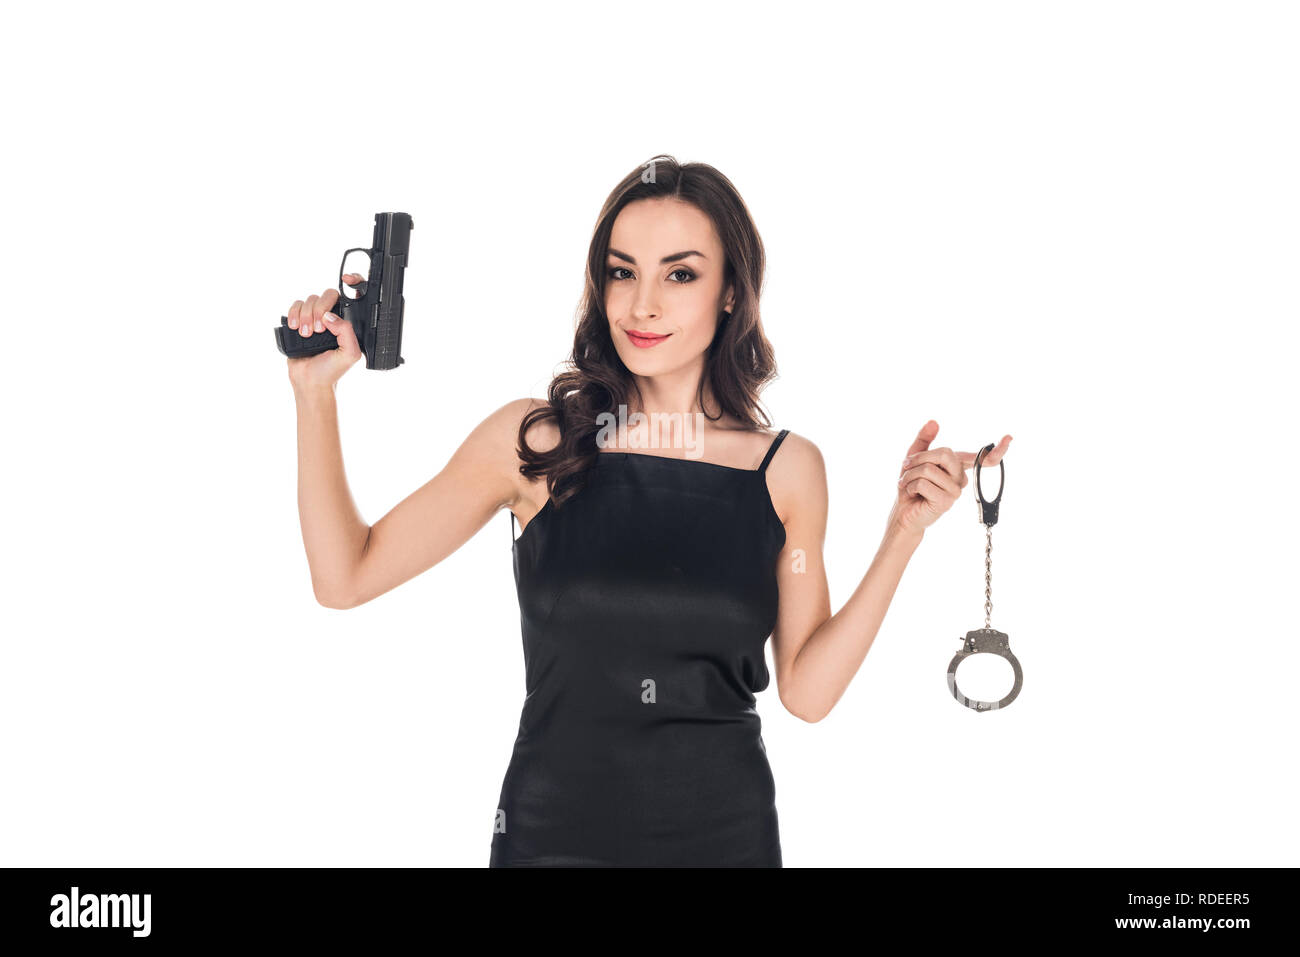 Atractivo sonriente agente secreto en vestido negro sujetando la pistola y esposas, aislado en blanco Foto de stock